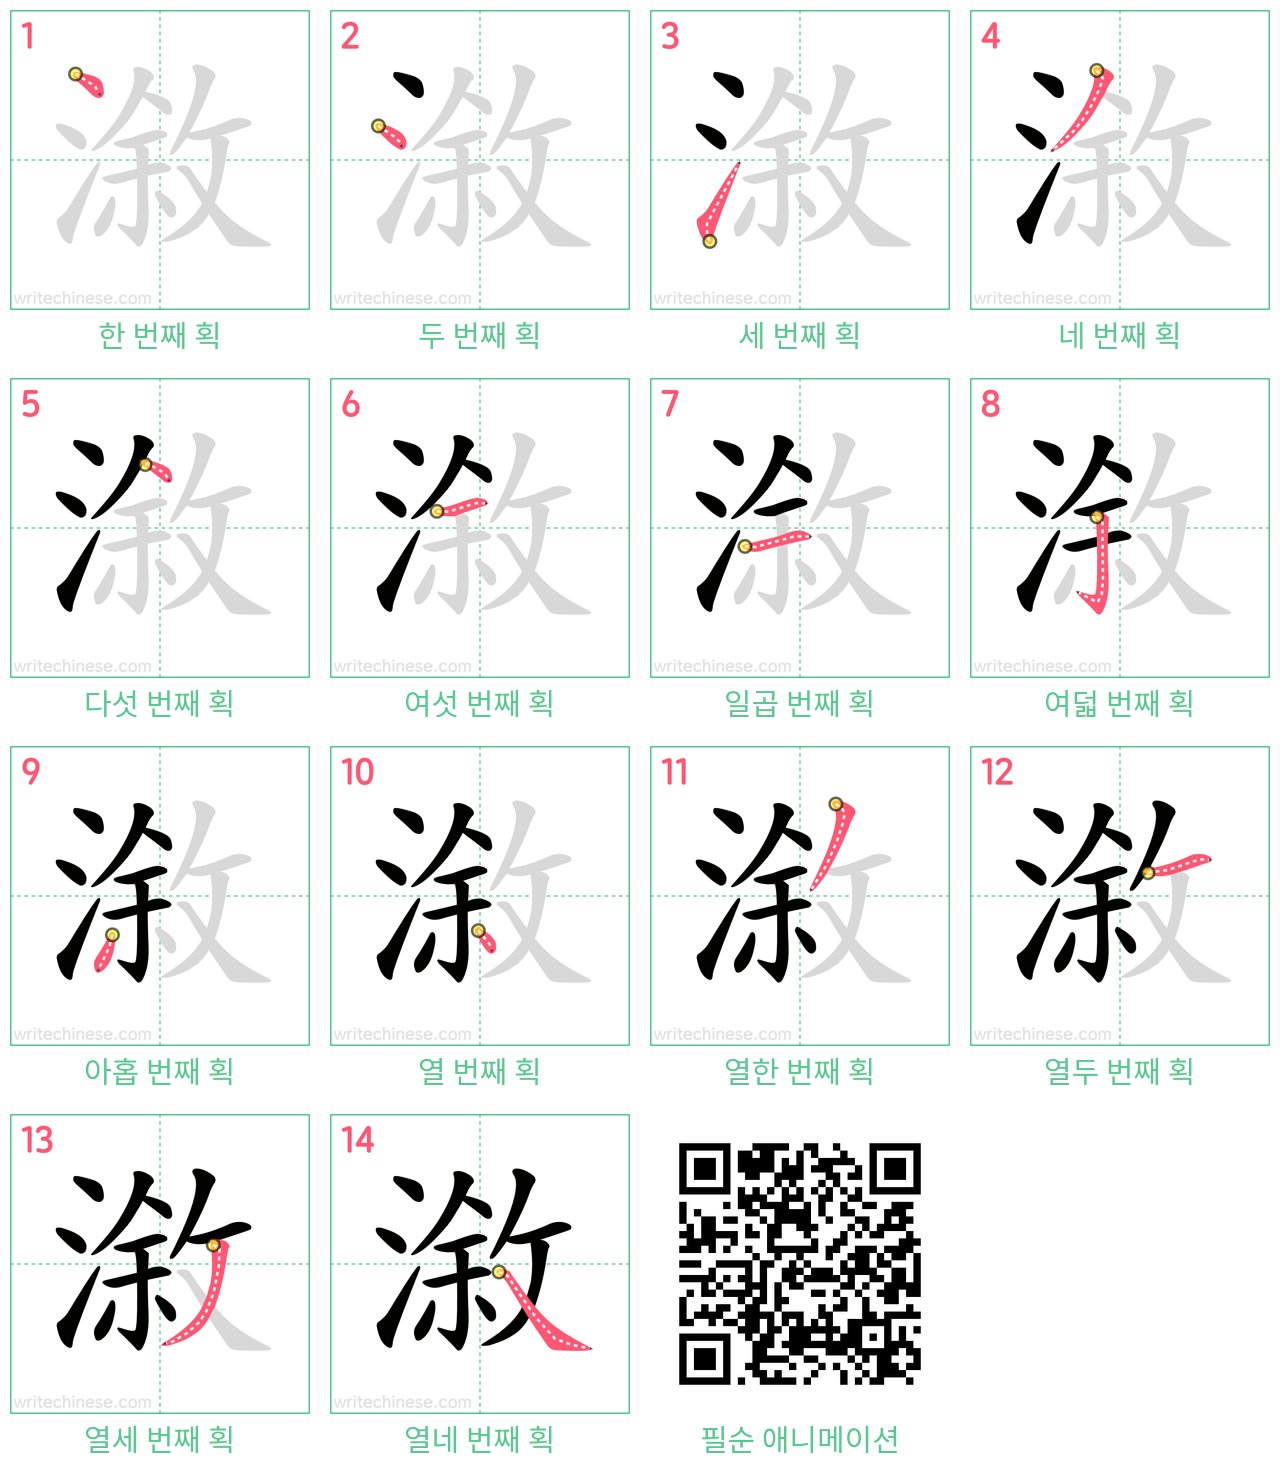 漵 step-by-step stroke order diagrams